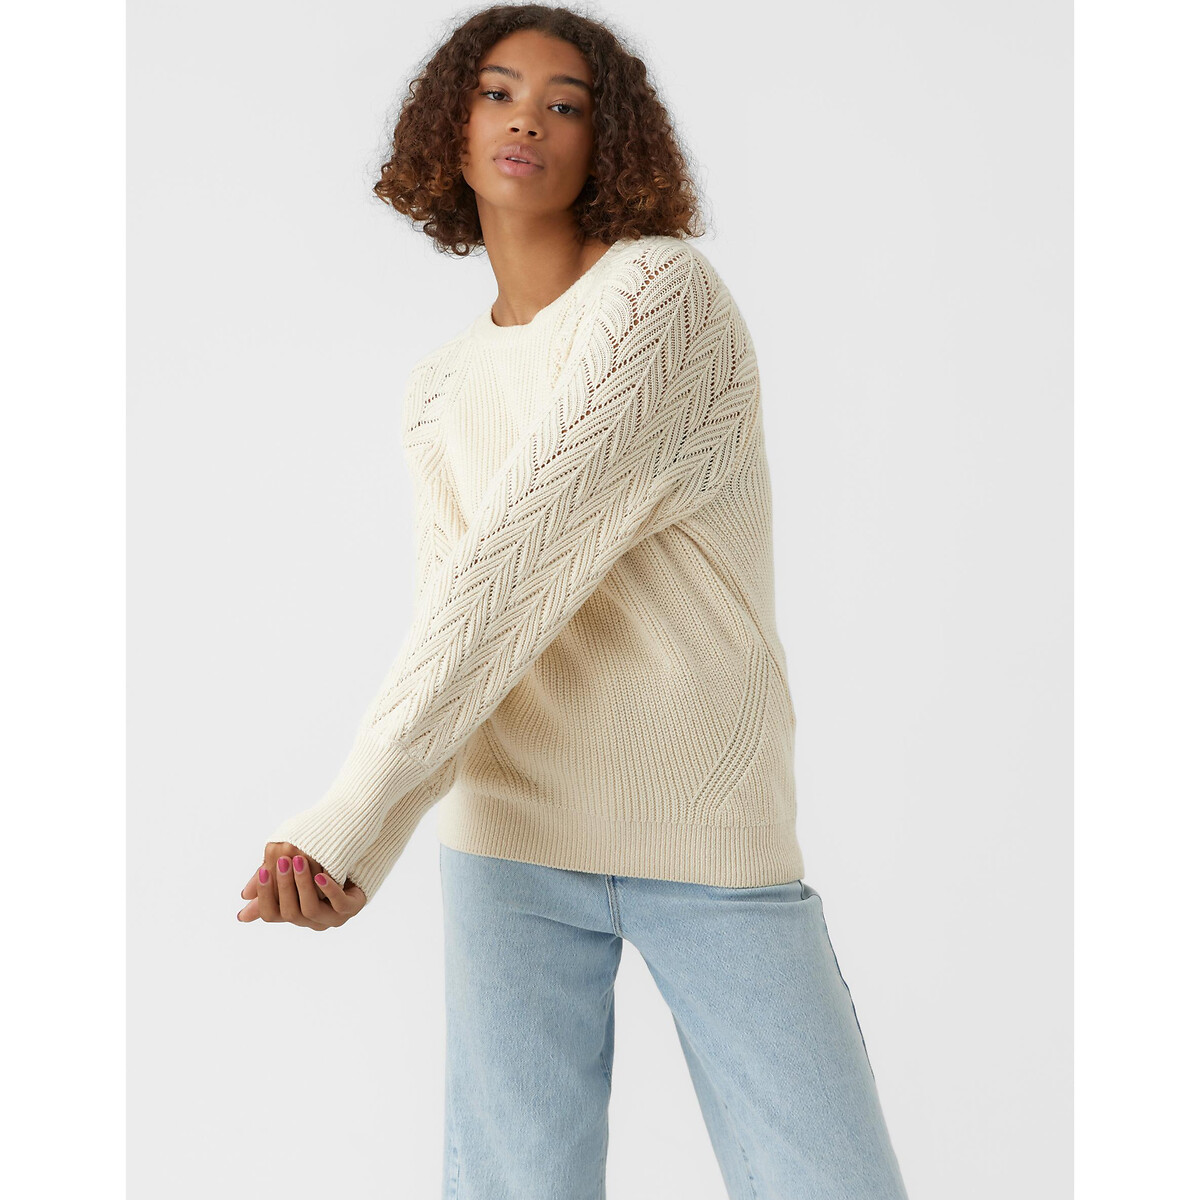 Пуловер с круглым вырезом рукава из ажурного трикотажа S бежевый пуловер с круглым вырезом из тонкого ажурного трикотажа 4 года 102 см бежевый